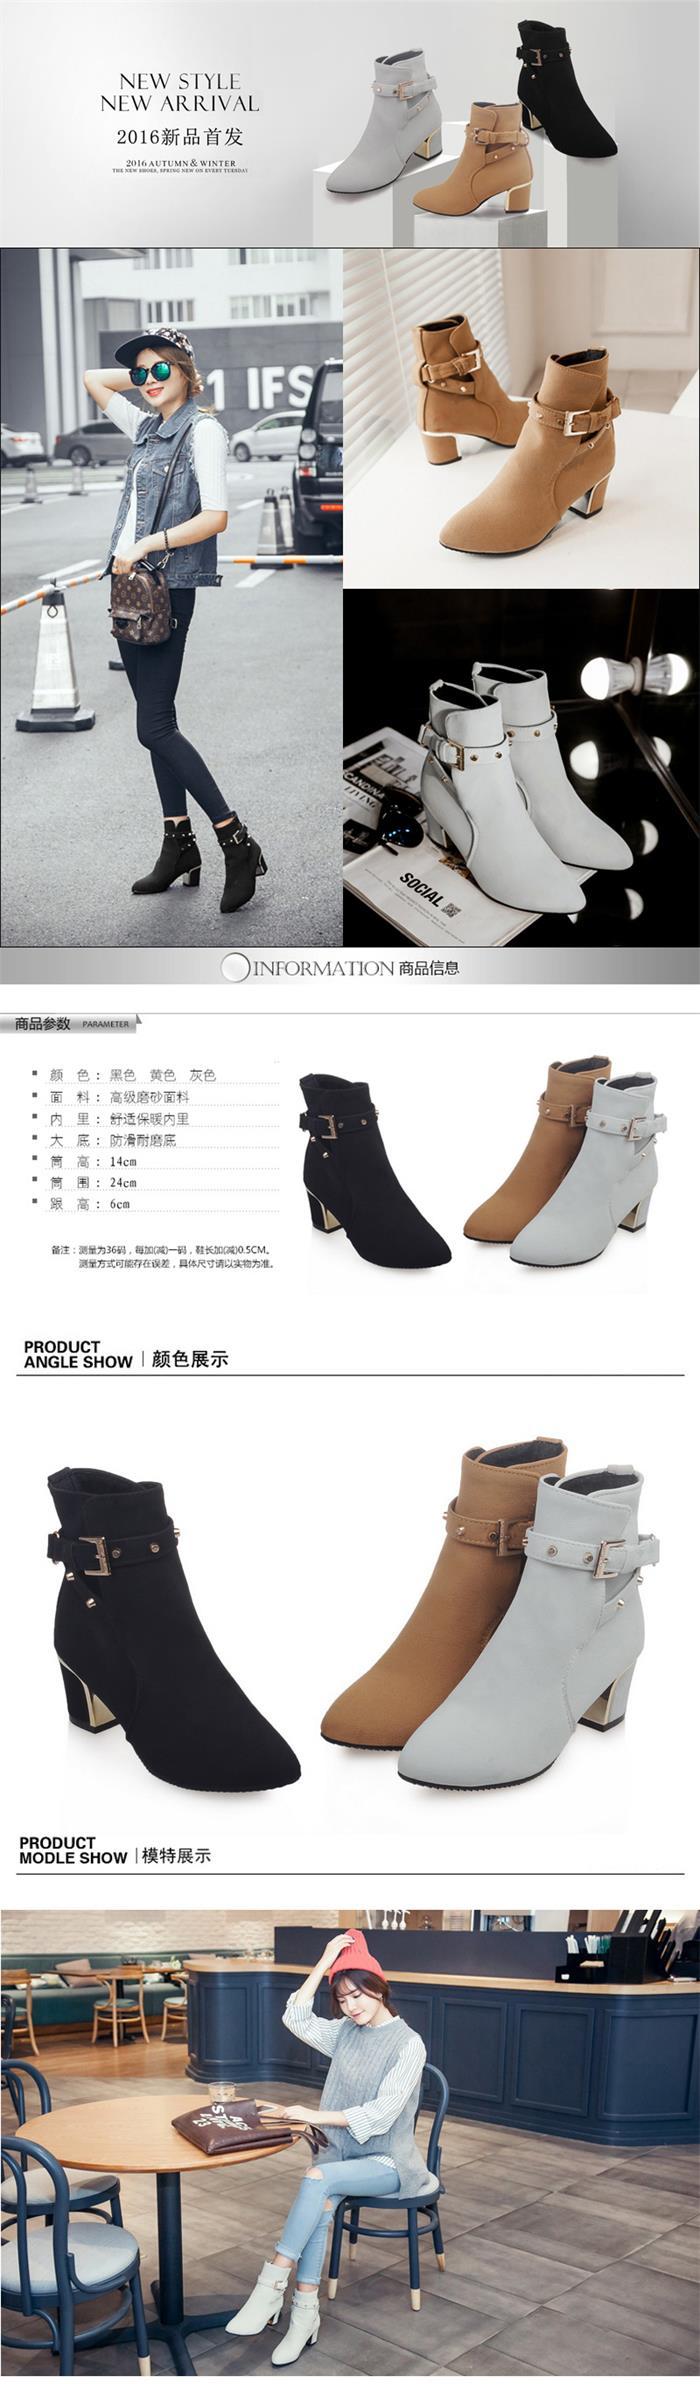 韩版磨砂尖头短靴女秋冬季新款粗跟单鞋子休闲中筒高跟马丁靴